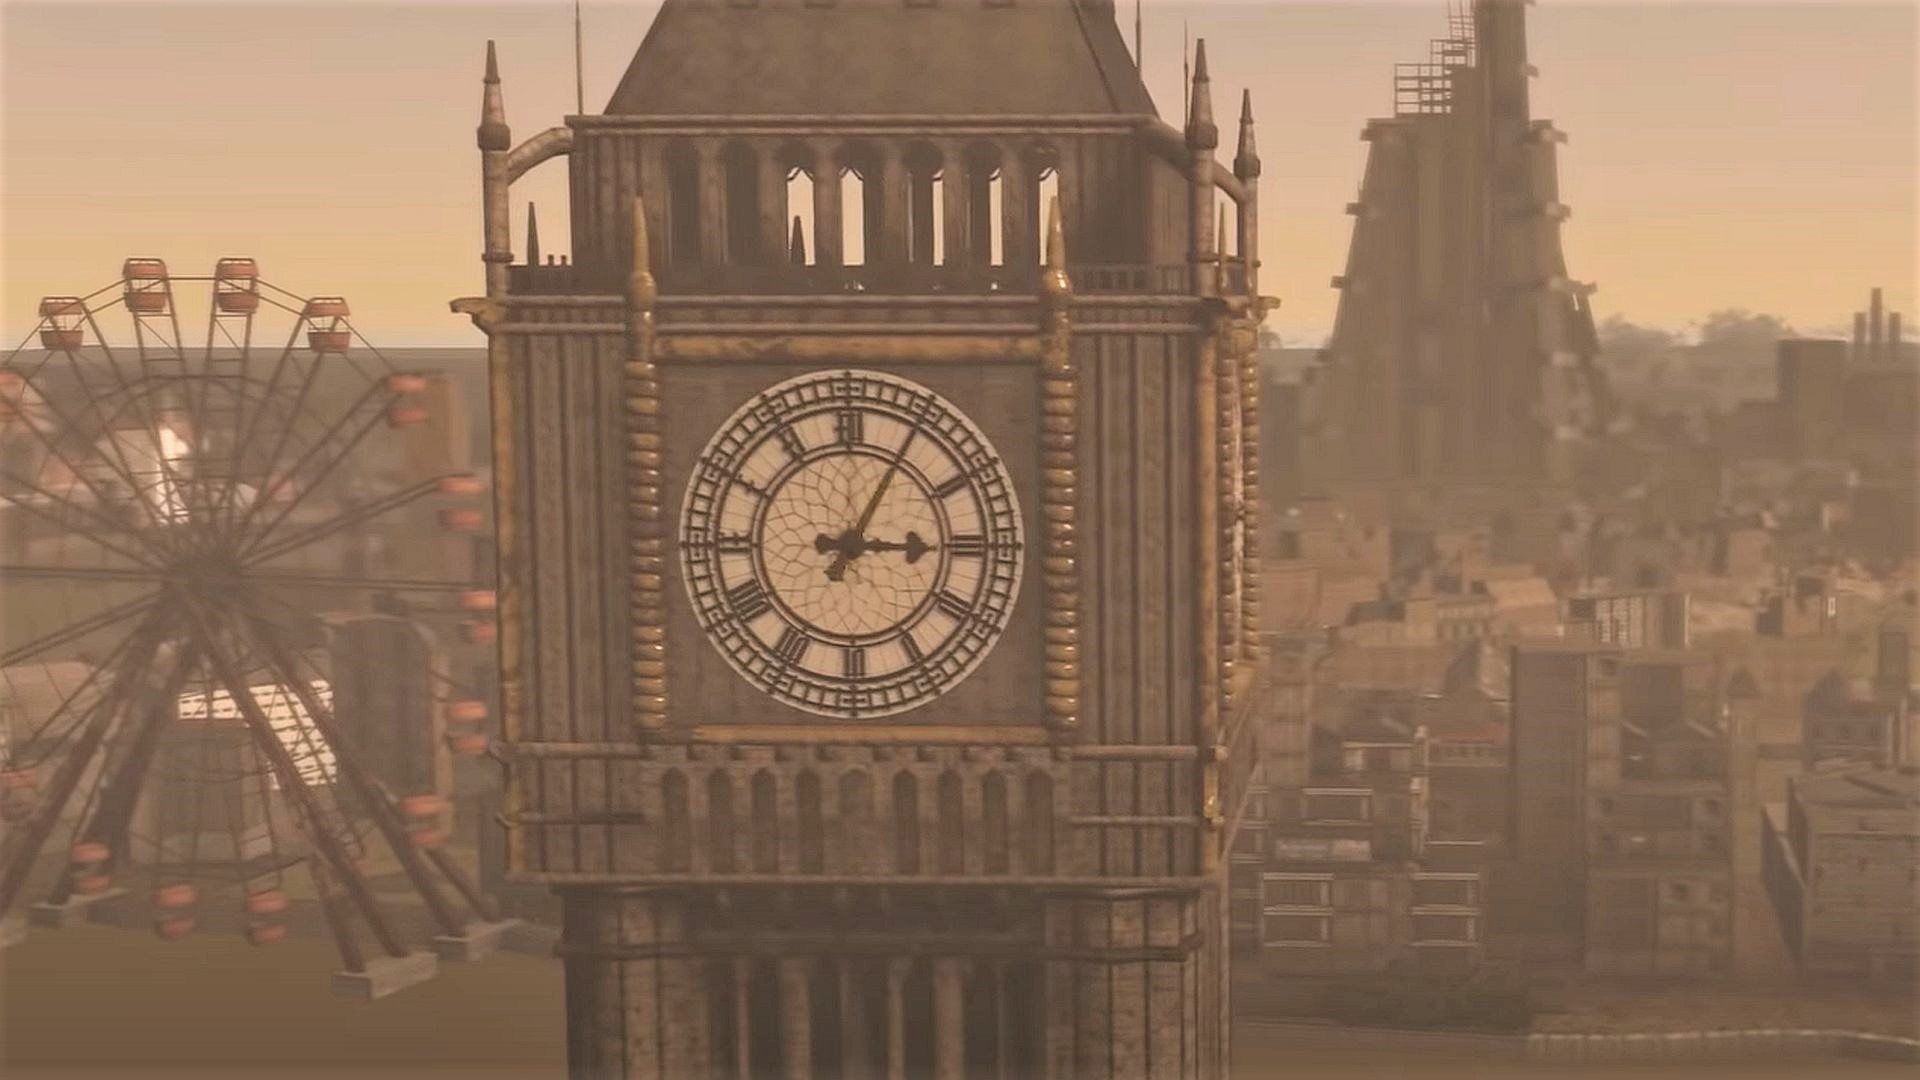 Fallout: London-moddere avslører en mengde nytt innhold for den enorme Fallout 4-moden